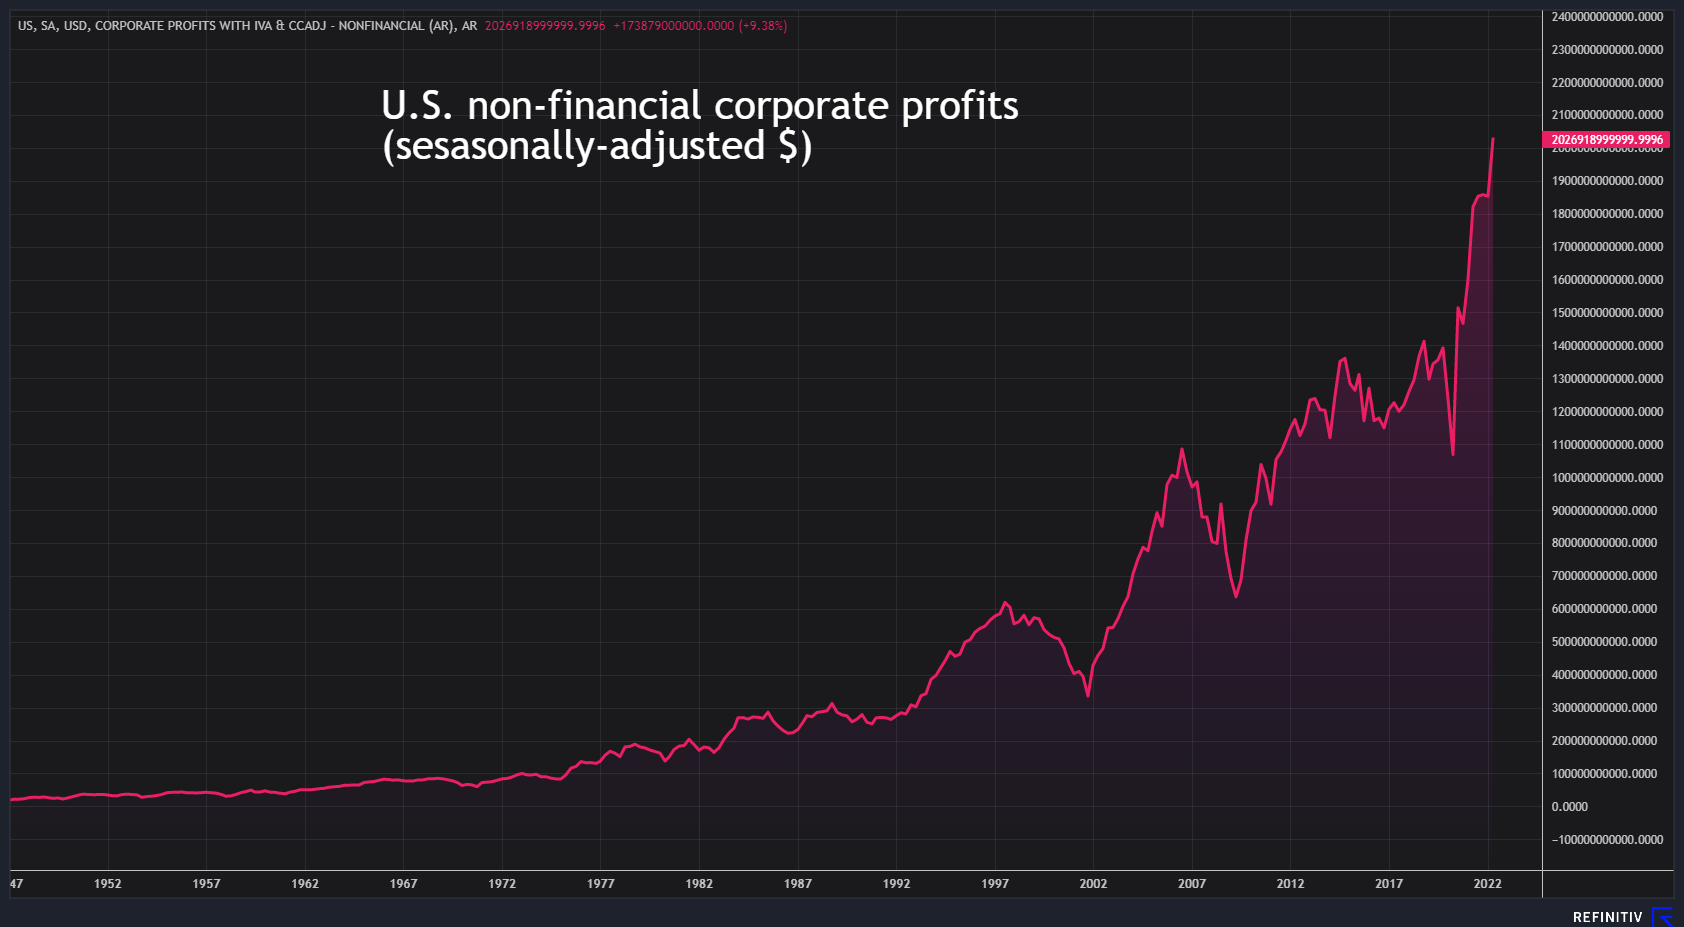 U.S. non-financial corporate profits top $2 trillion